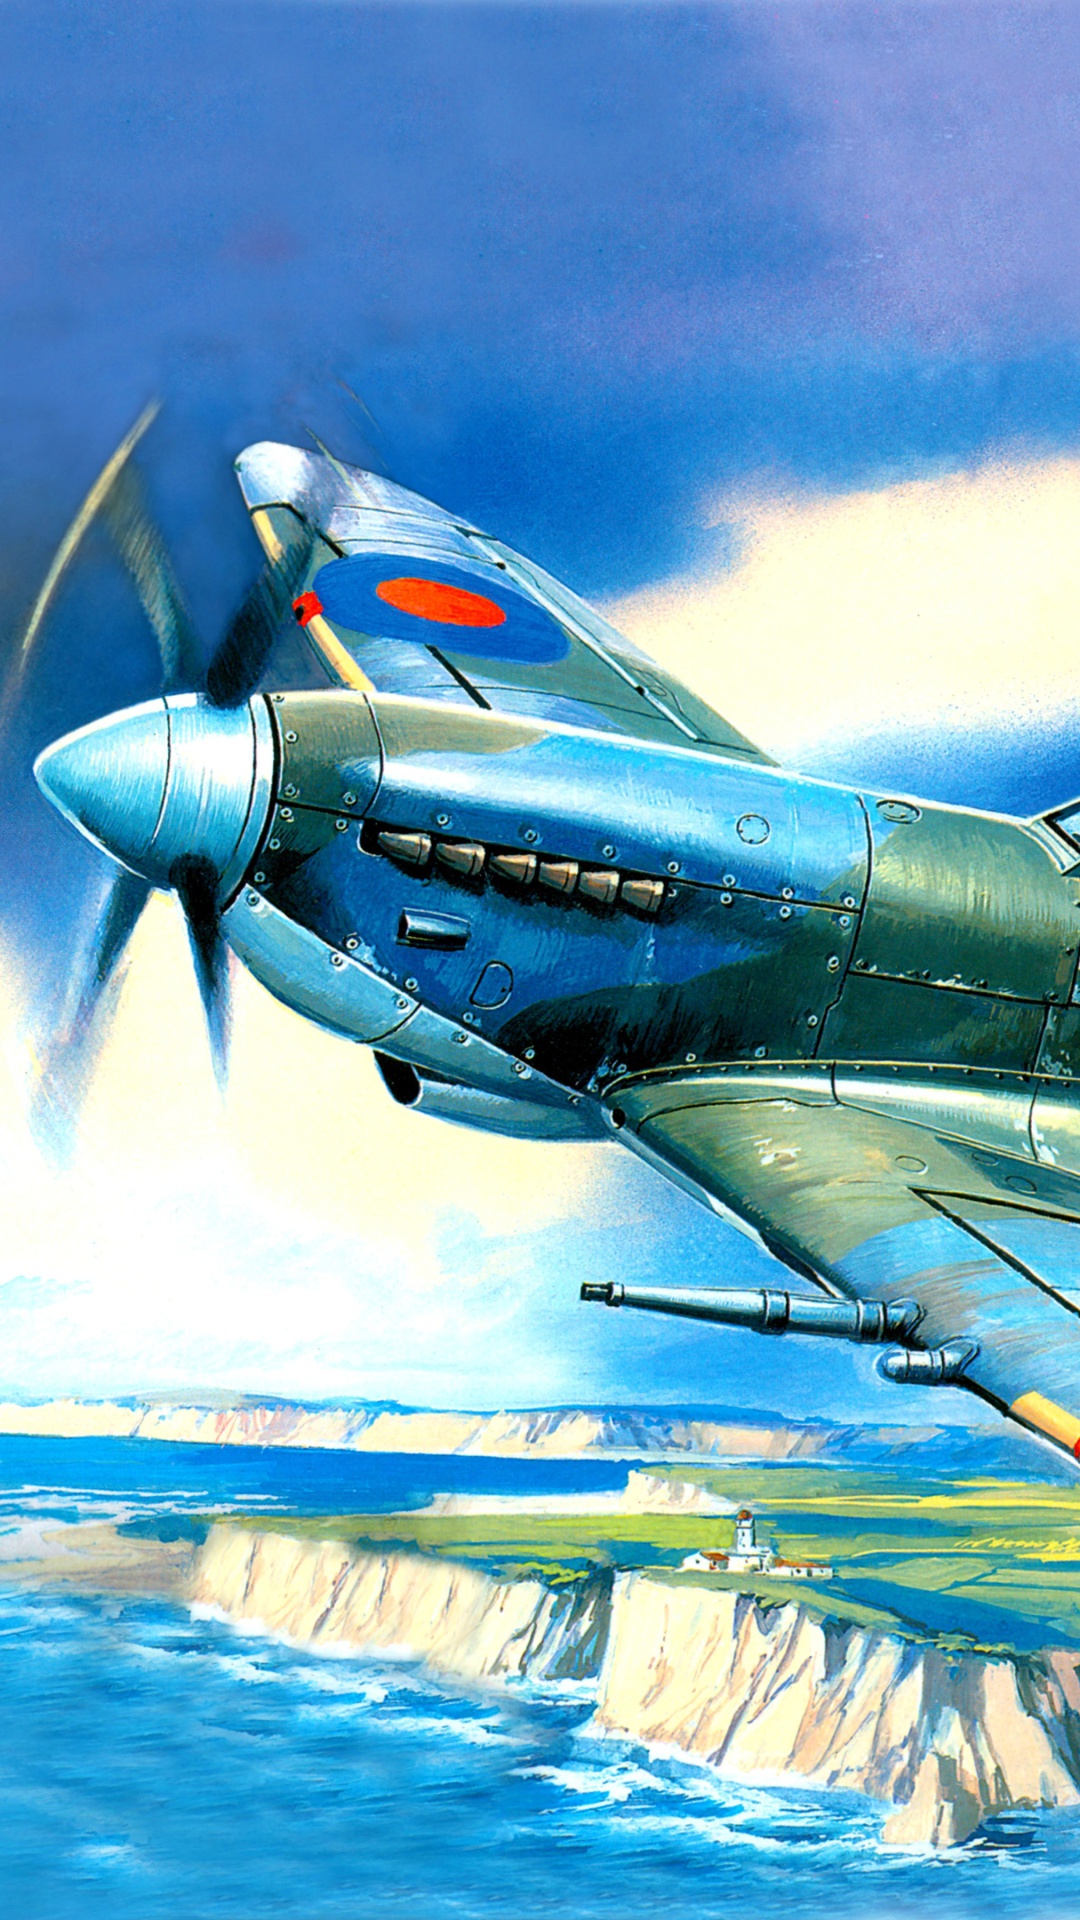 Das British Supermarine Spitfire Mk IX Wallpaper 1080x1920